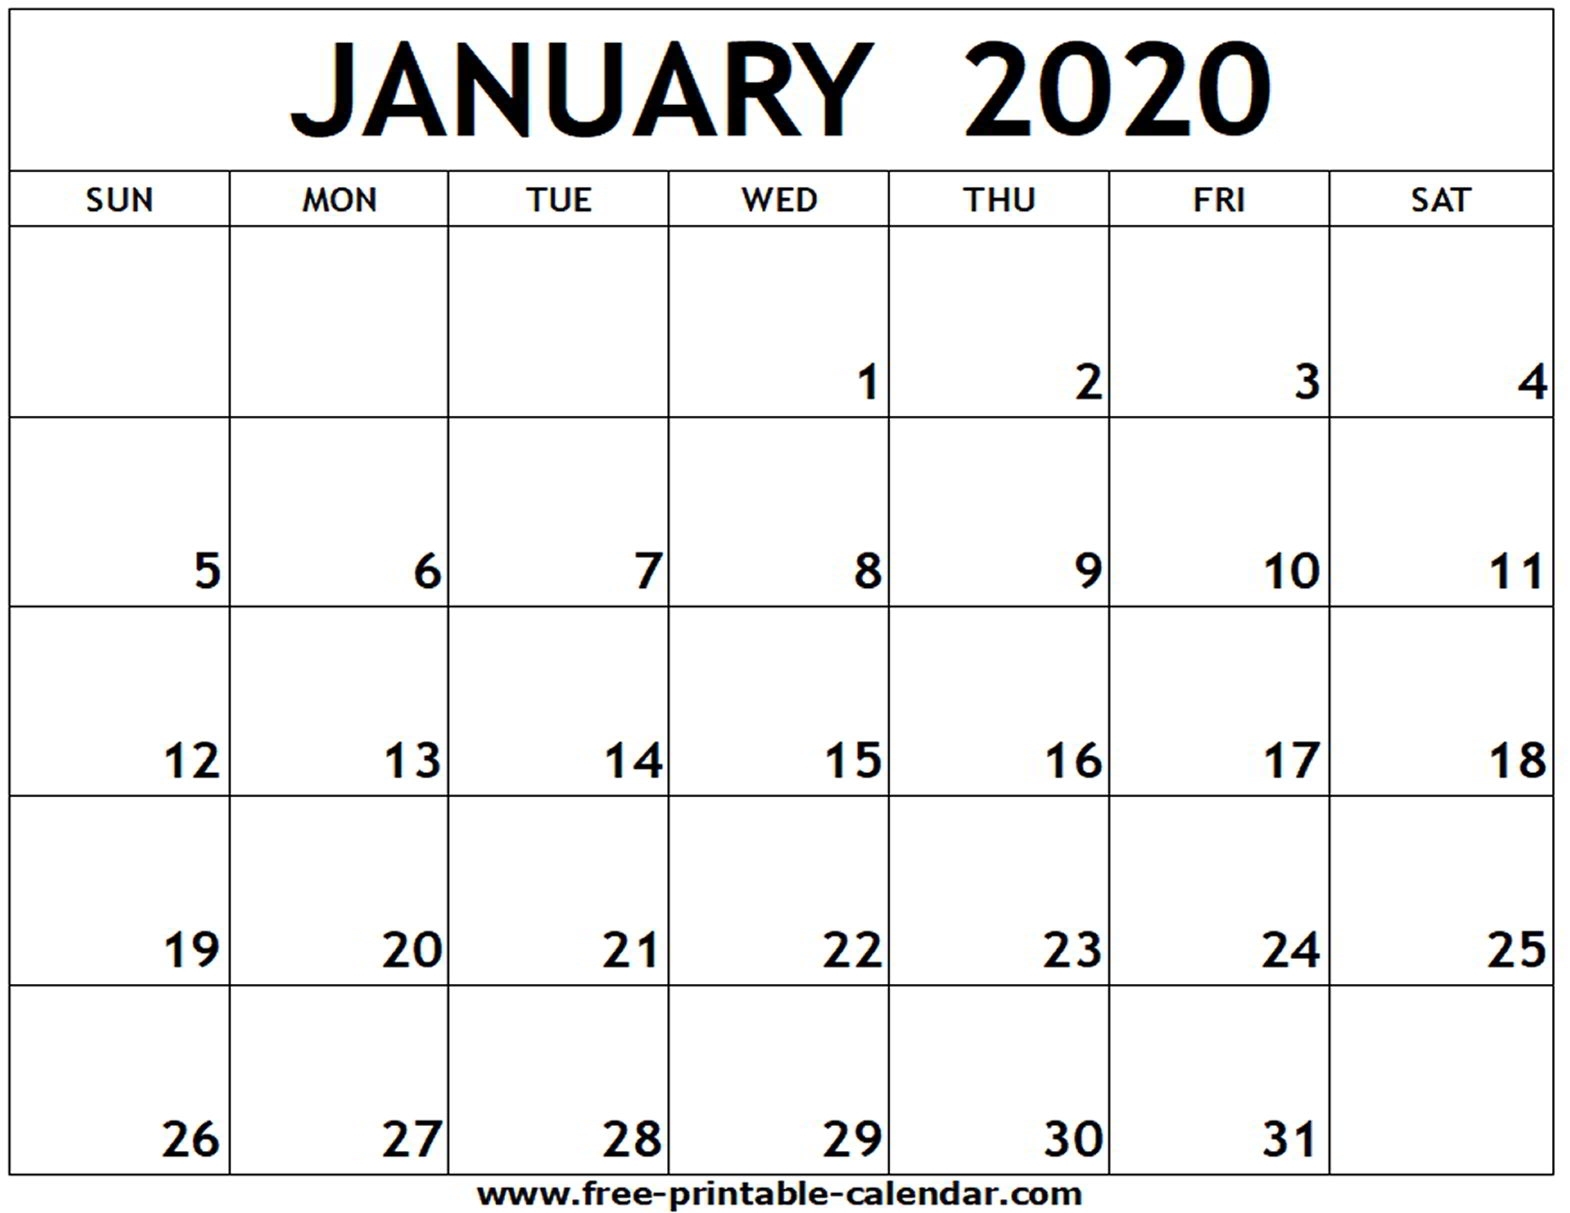 January 2020 Printable Calendar - Free-Printable-Calendar pertaining to Free Monthly Printable Calendar 2020